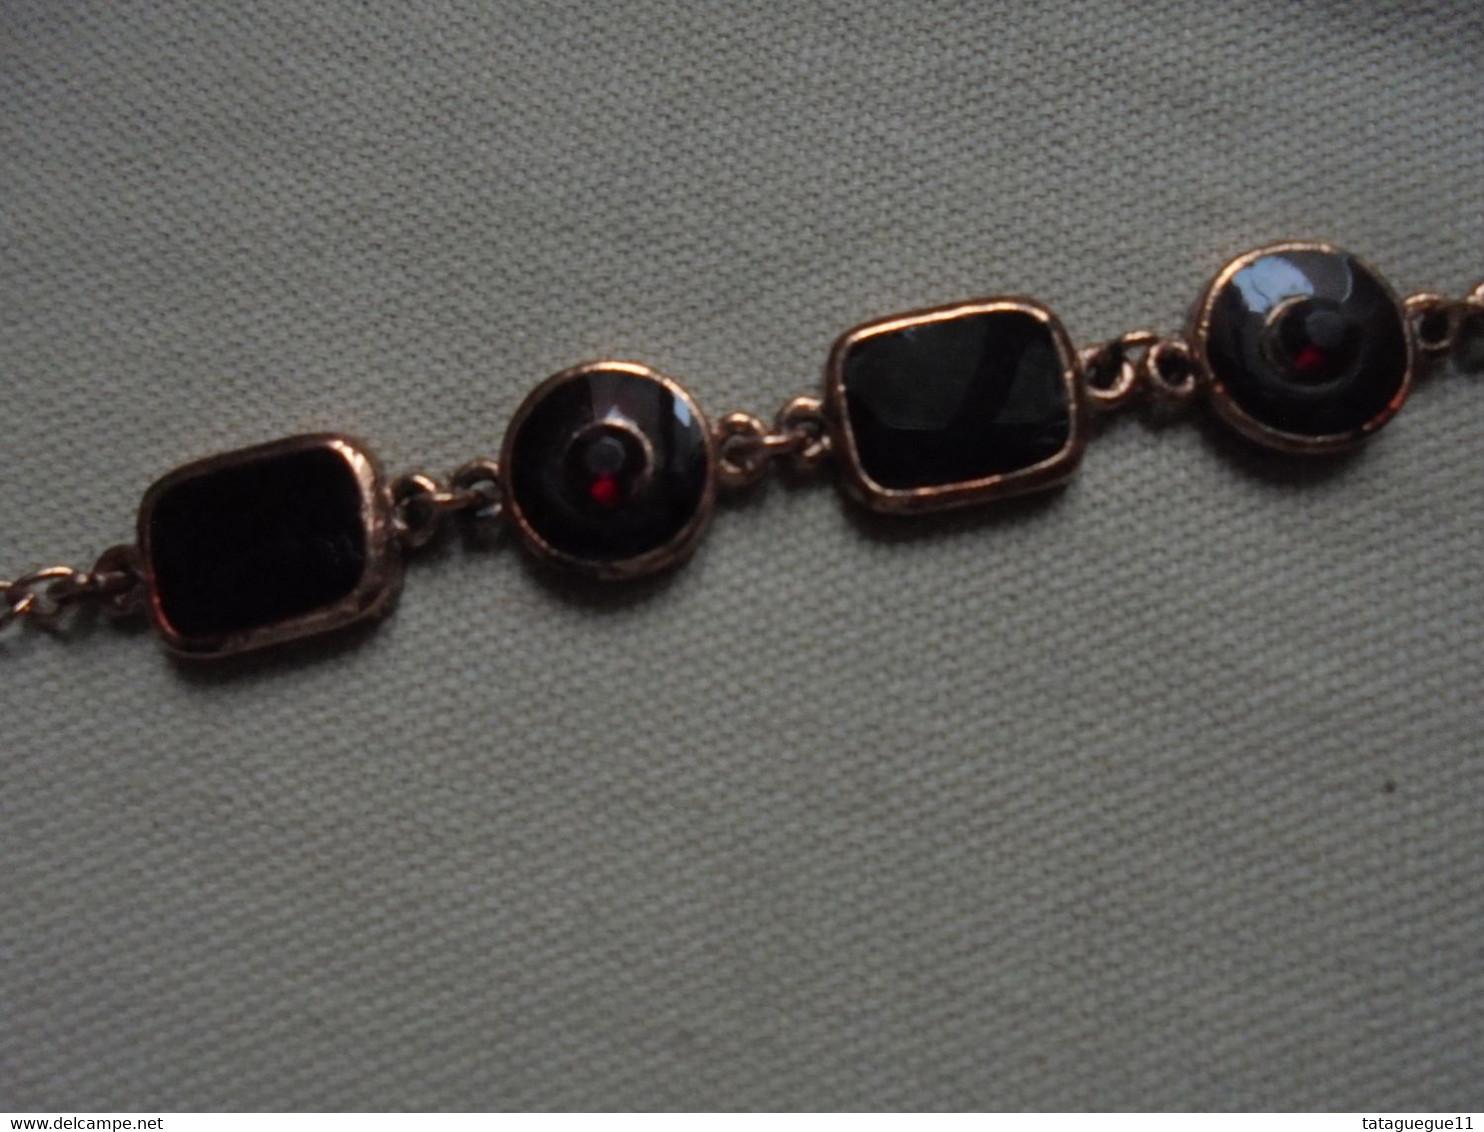 Vintage - Bijou fantaisie - Bracelet rouge noir